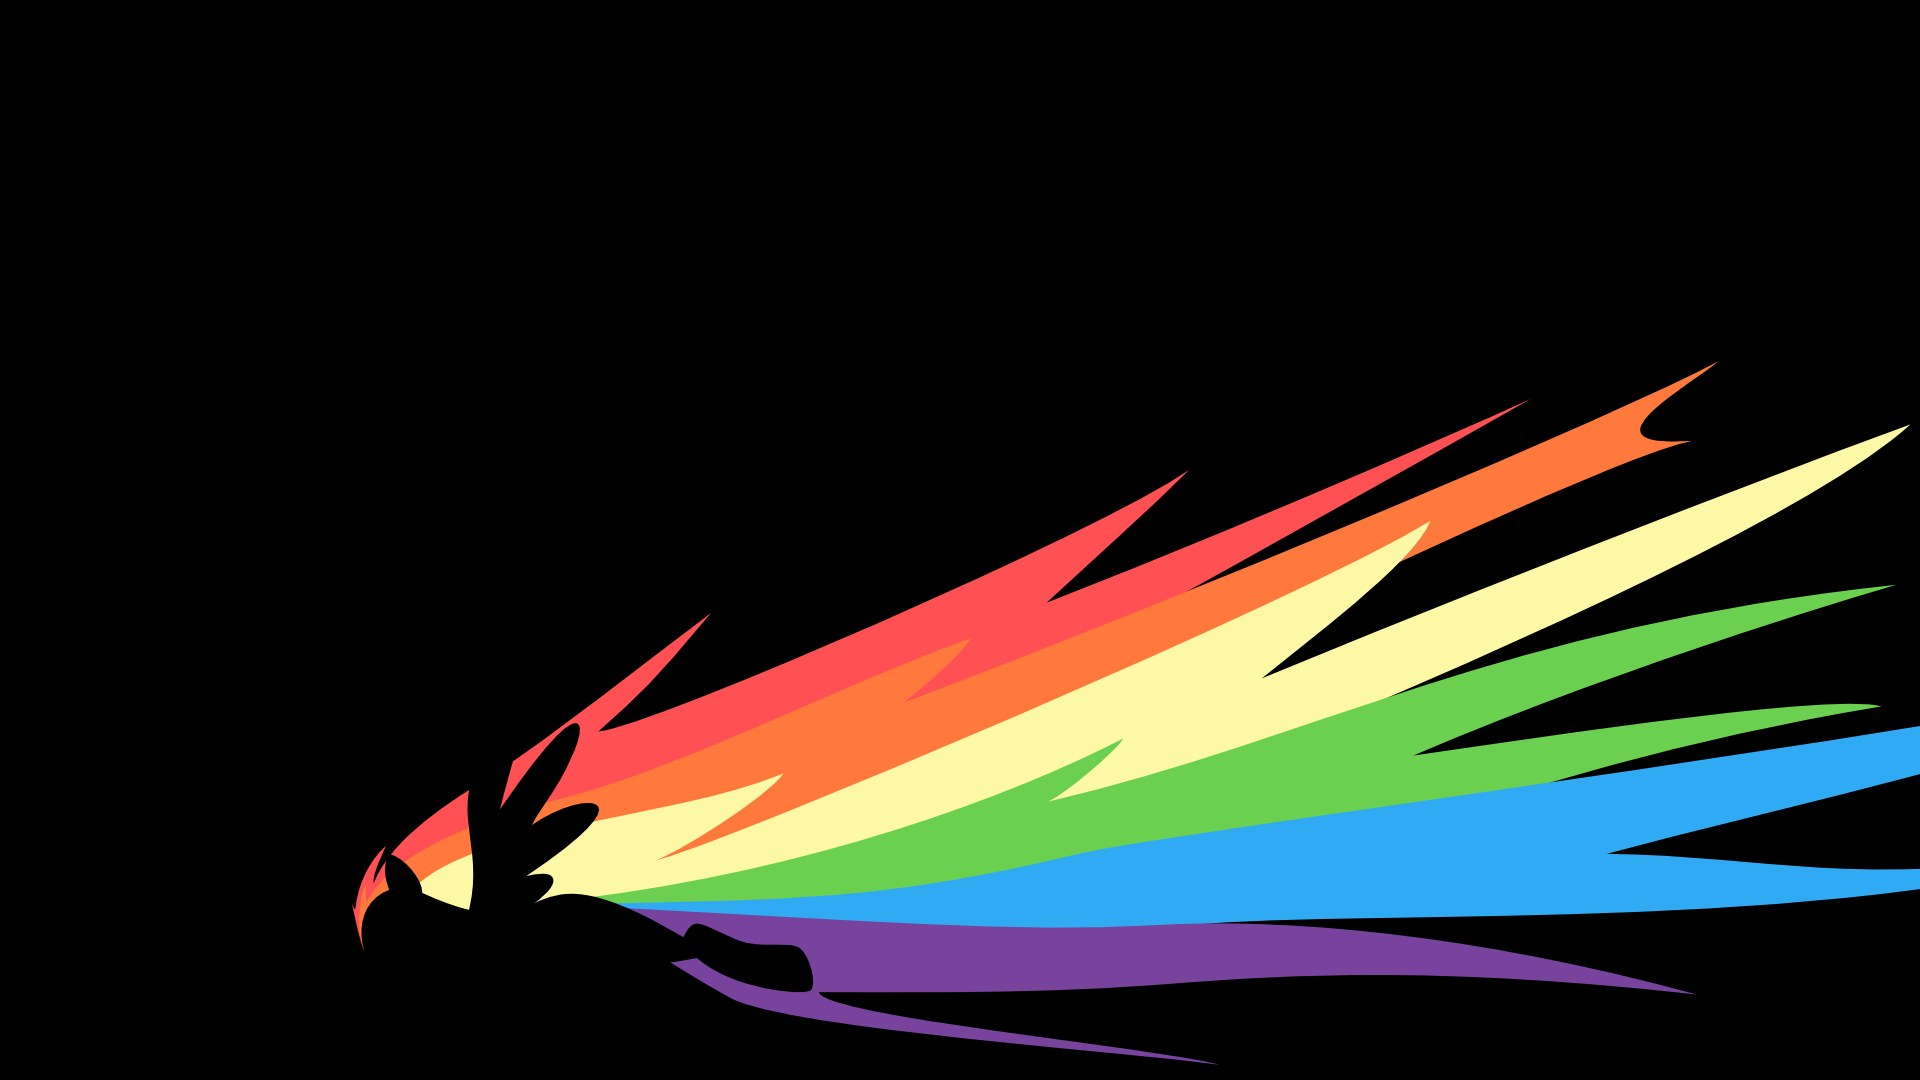 Rainbow flame by Agnara